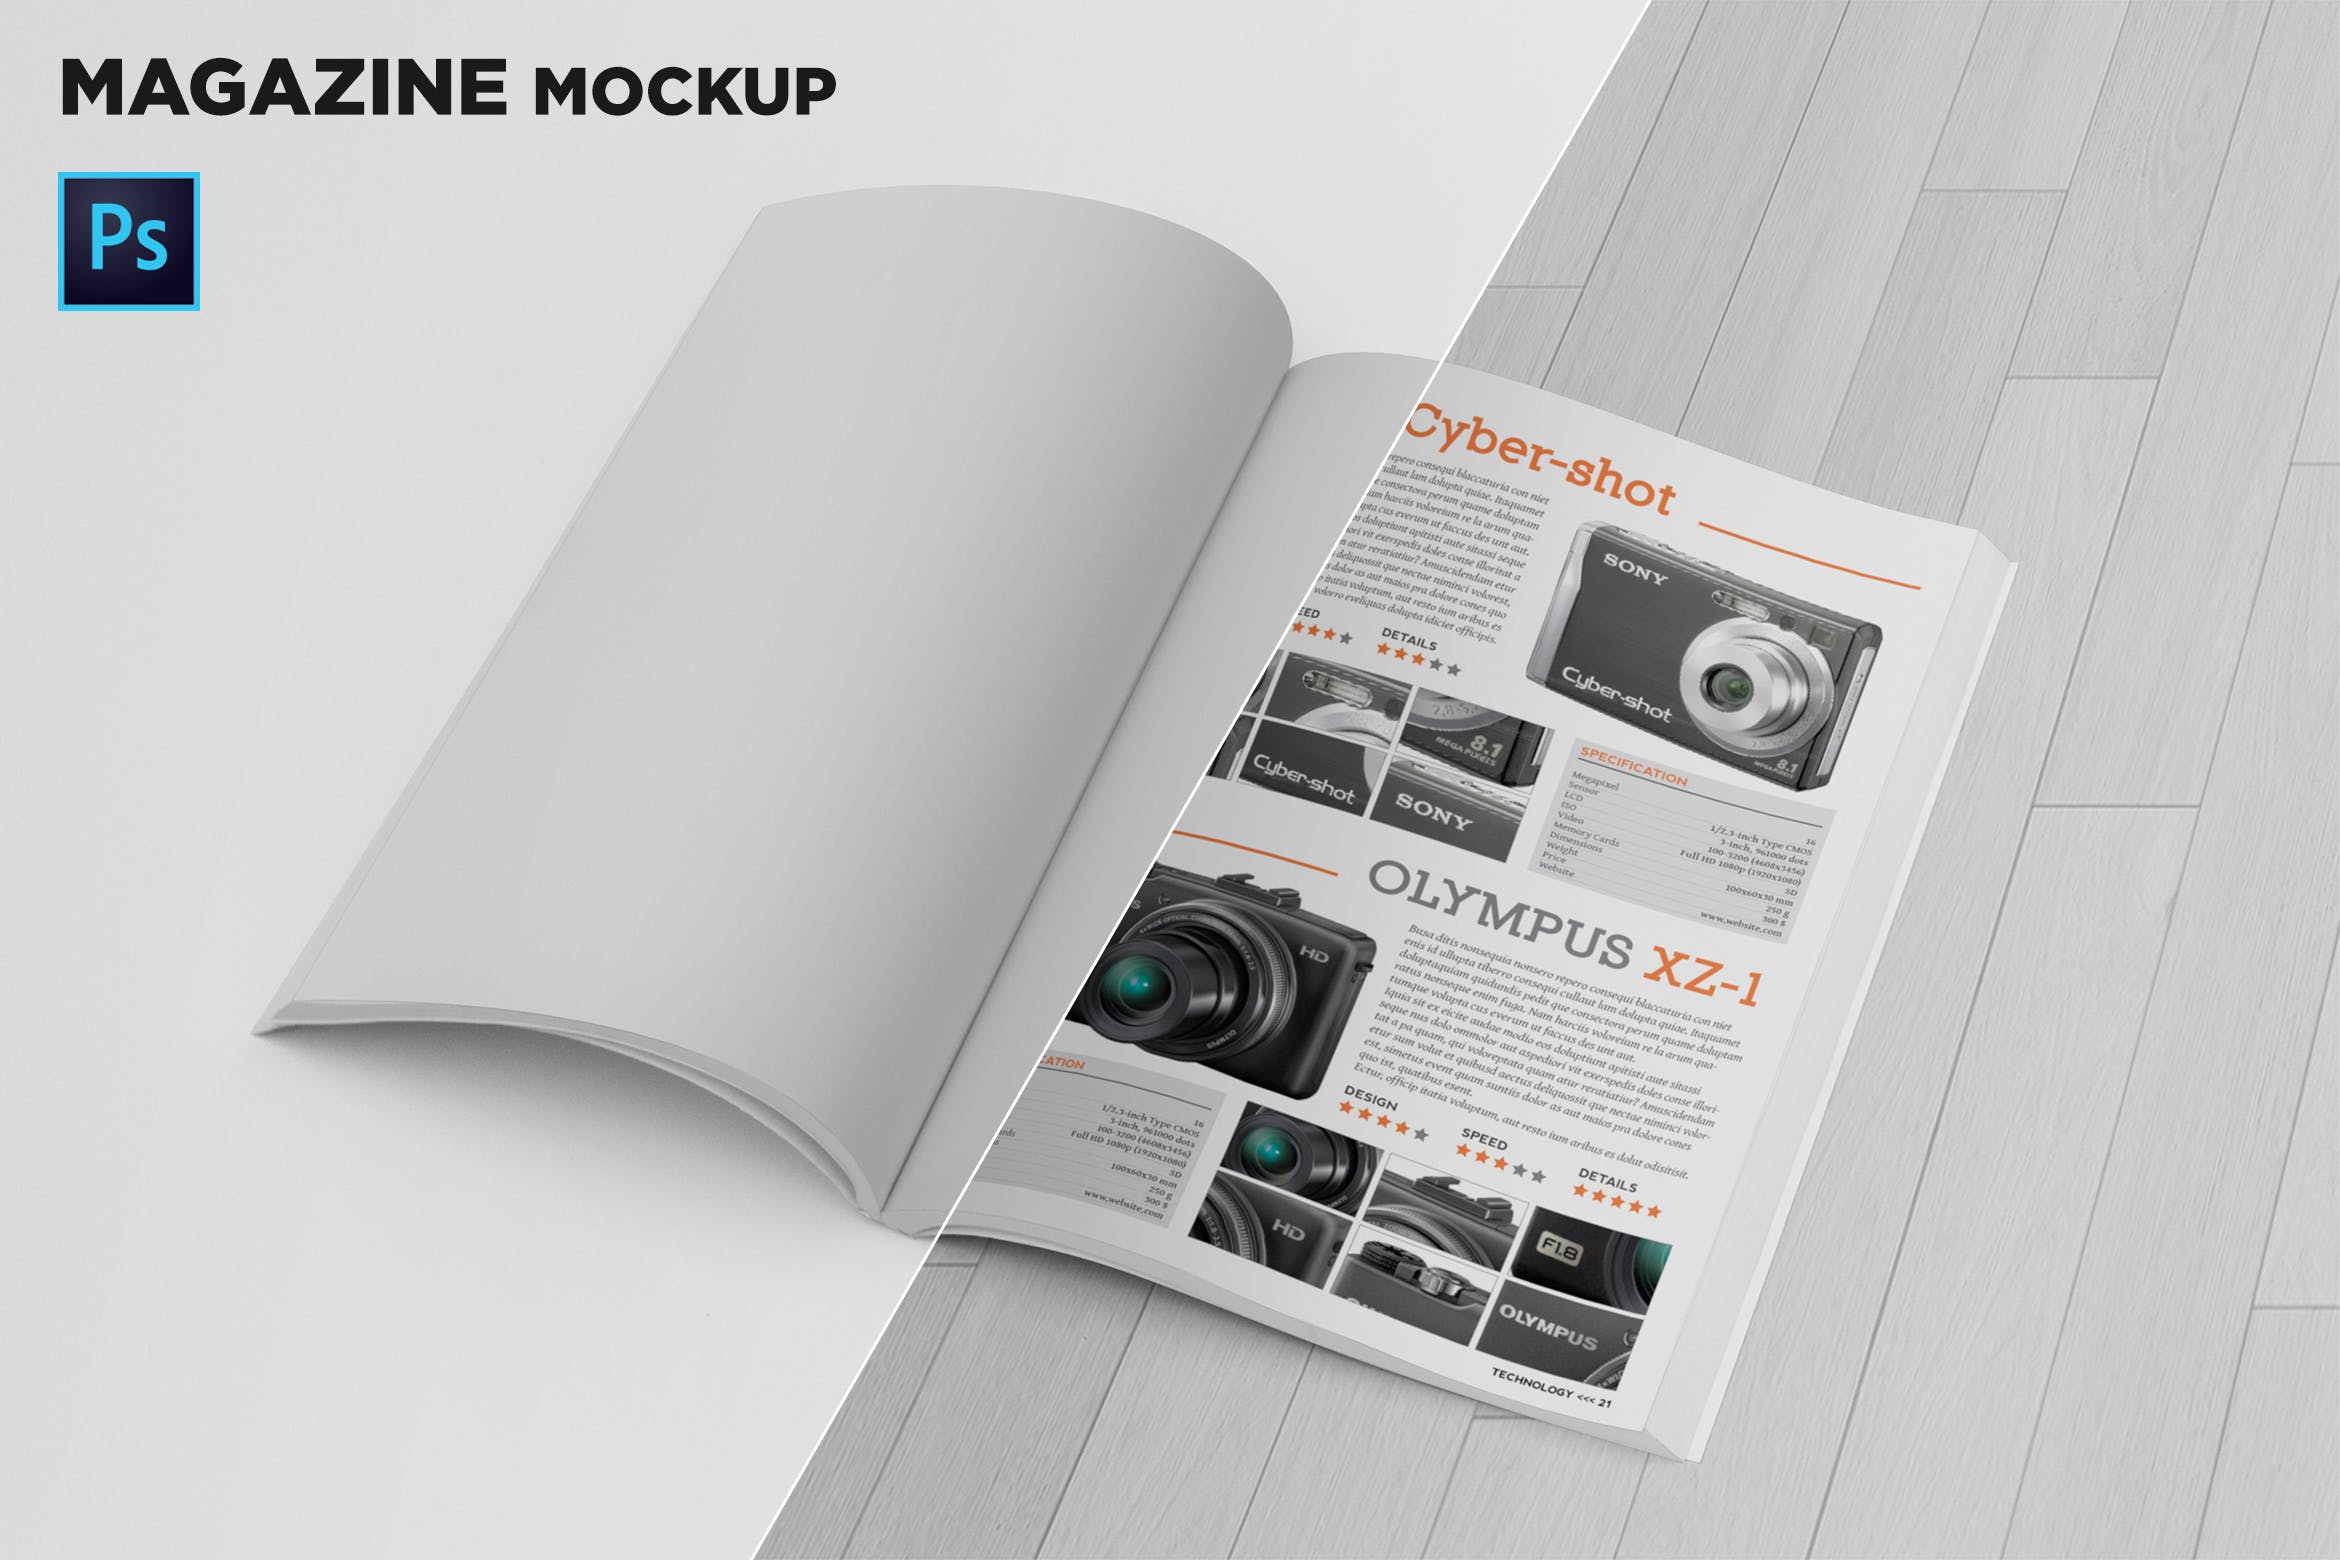 杂志内页版式设计翻页效果图样机非凡图库精选 Magazine Mockup Folded Page插图